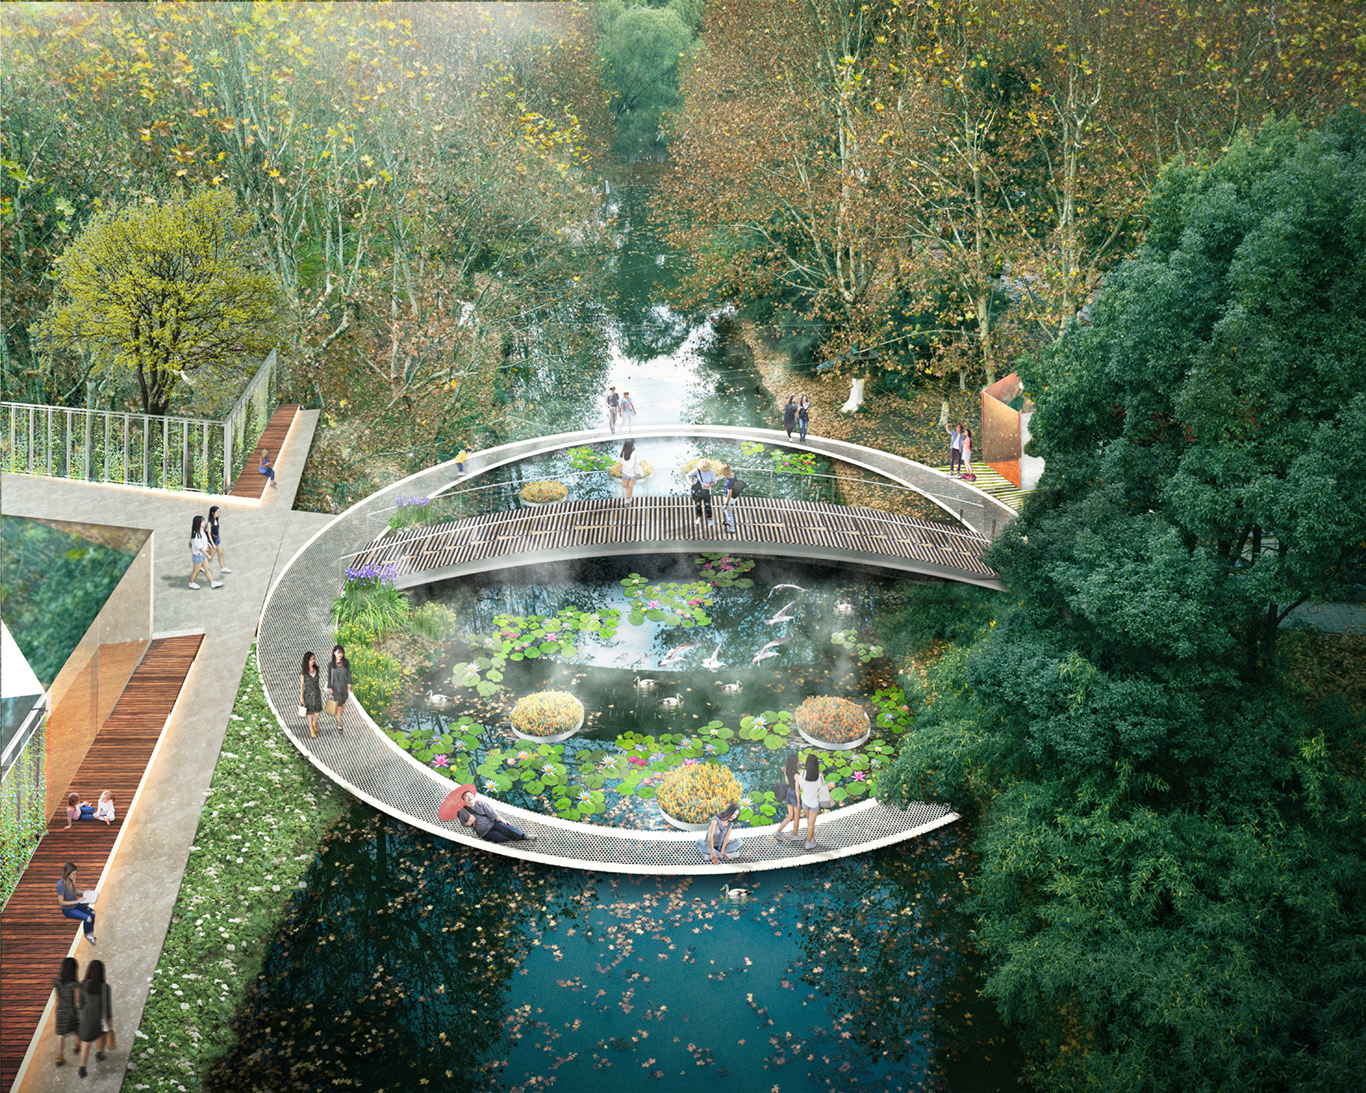 Stream Garden in Nanjing, China